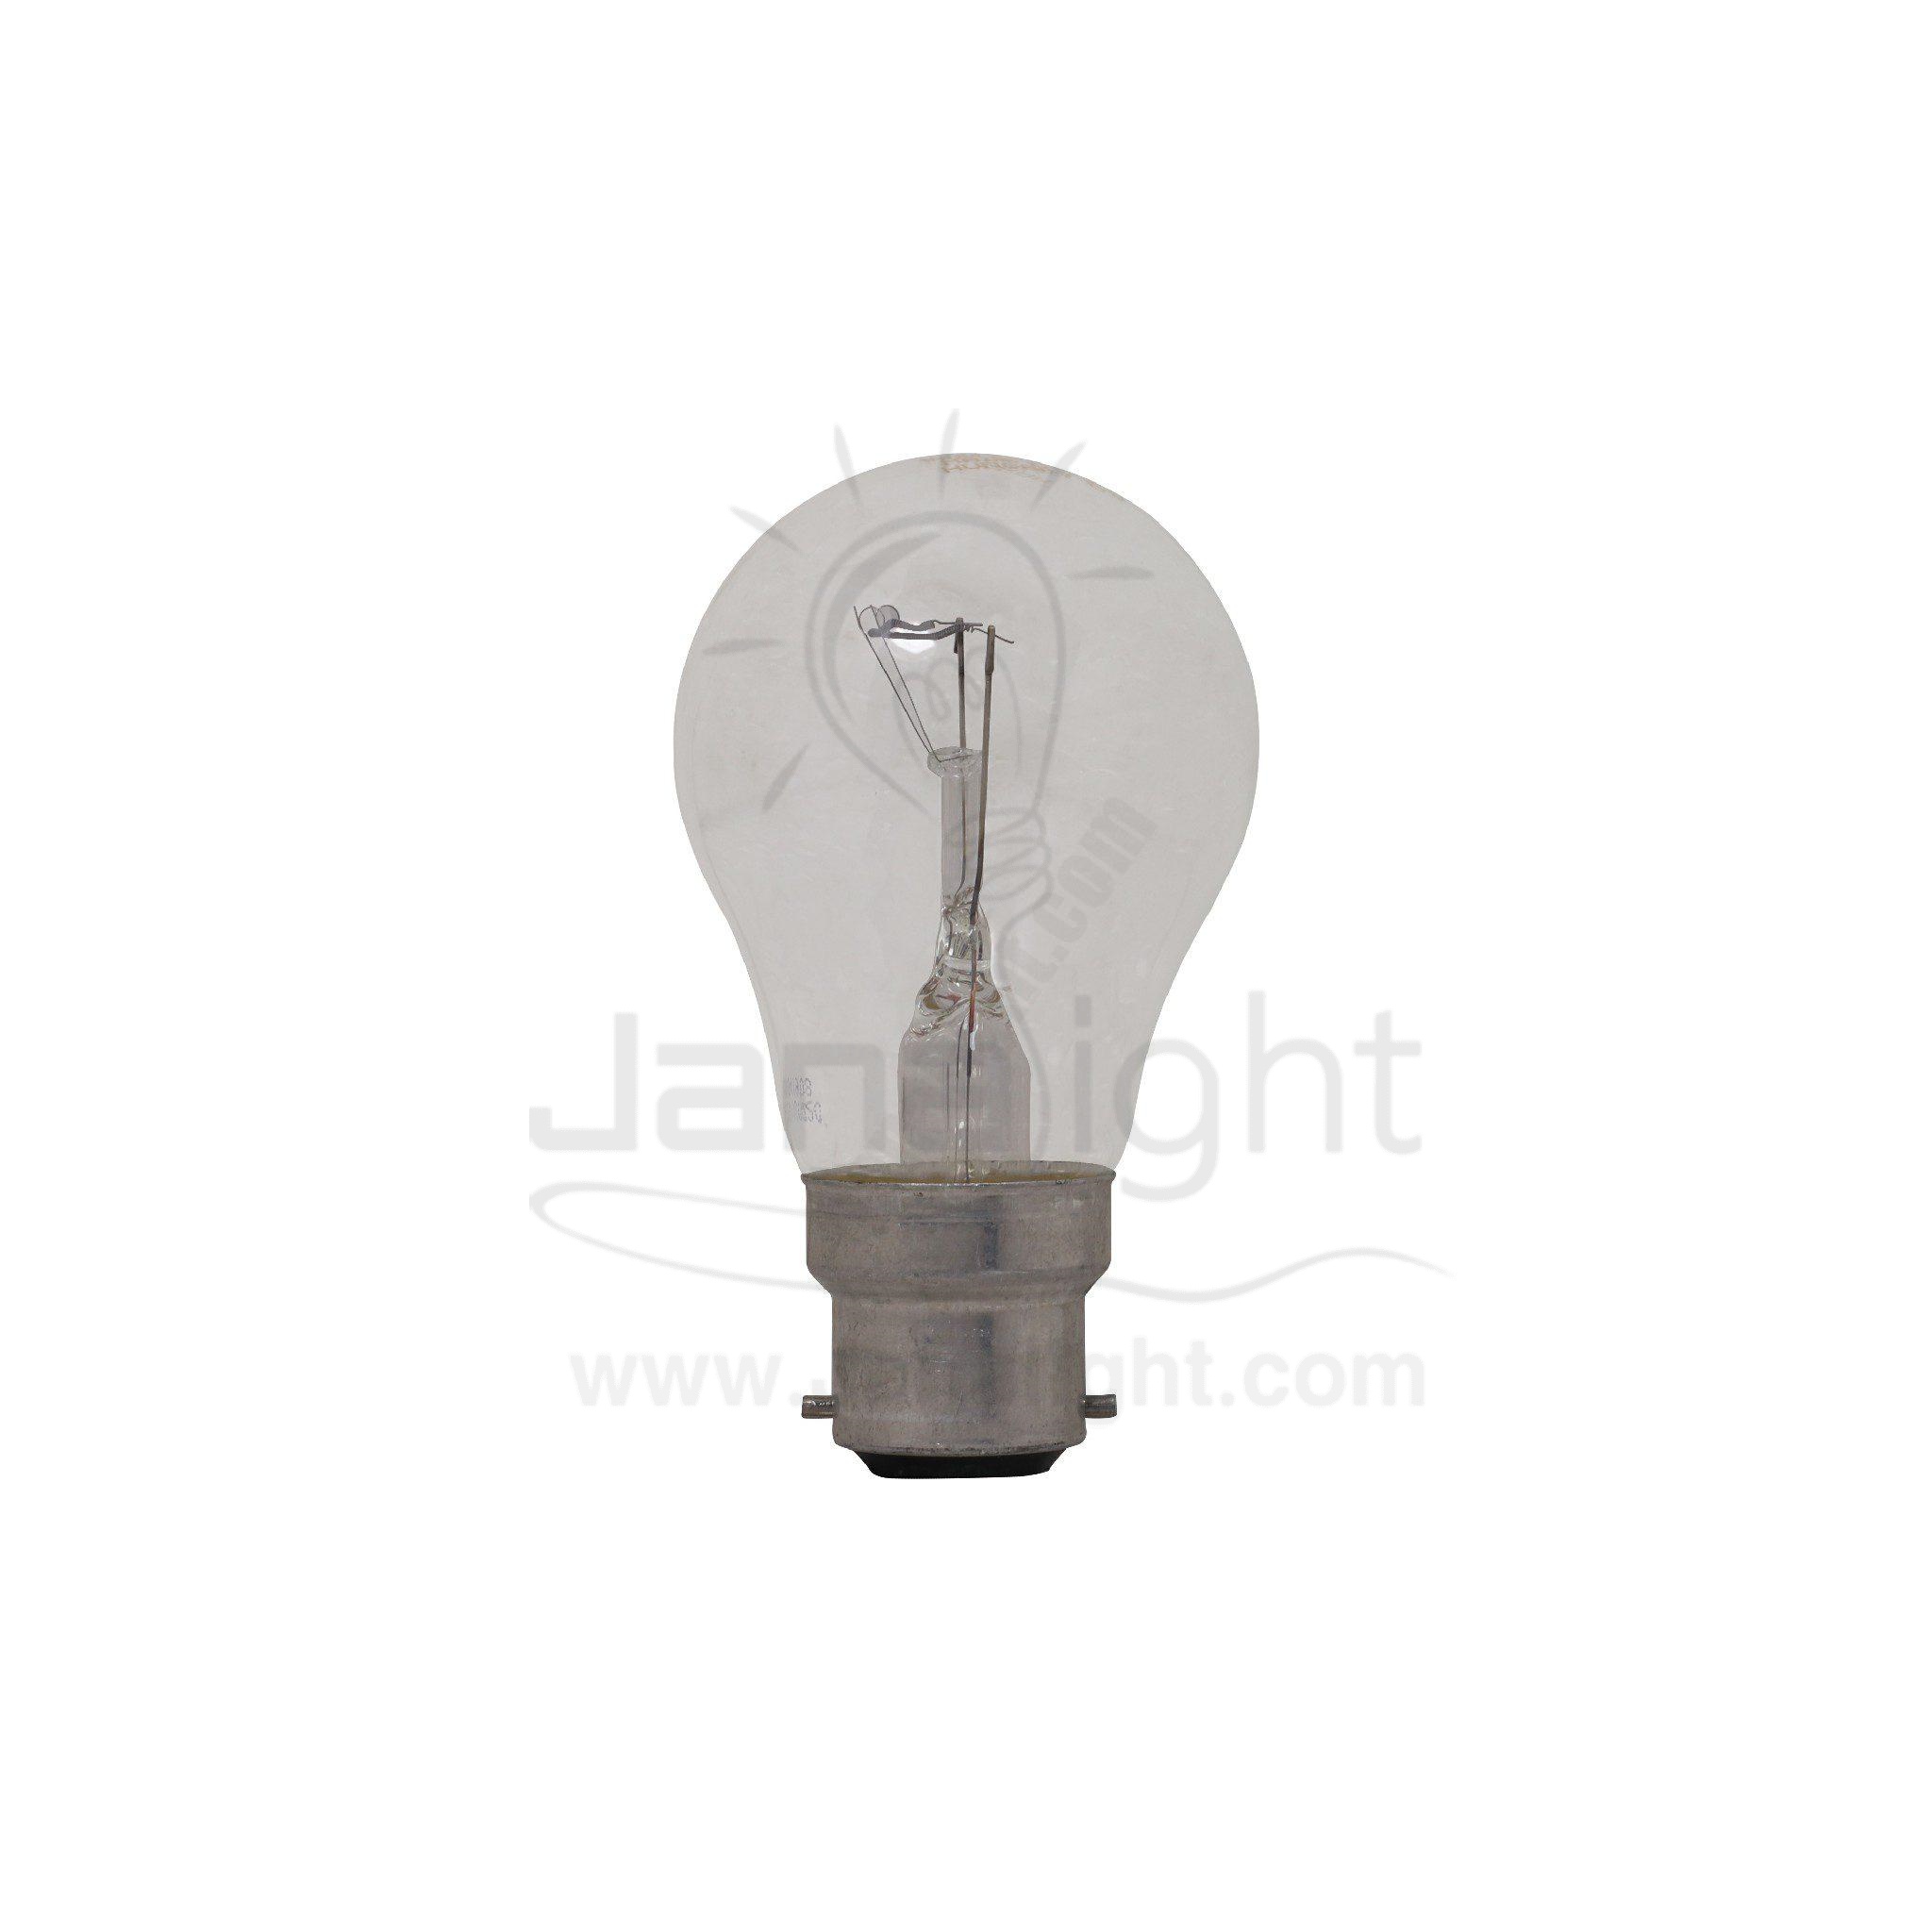 لمبة 100 وات شفافة مسمار هالوجين تونجزرام Nyaza Electric bulb 100 watt